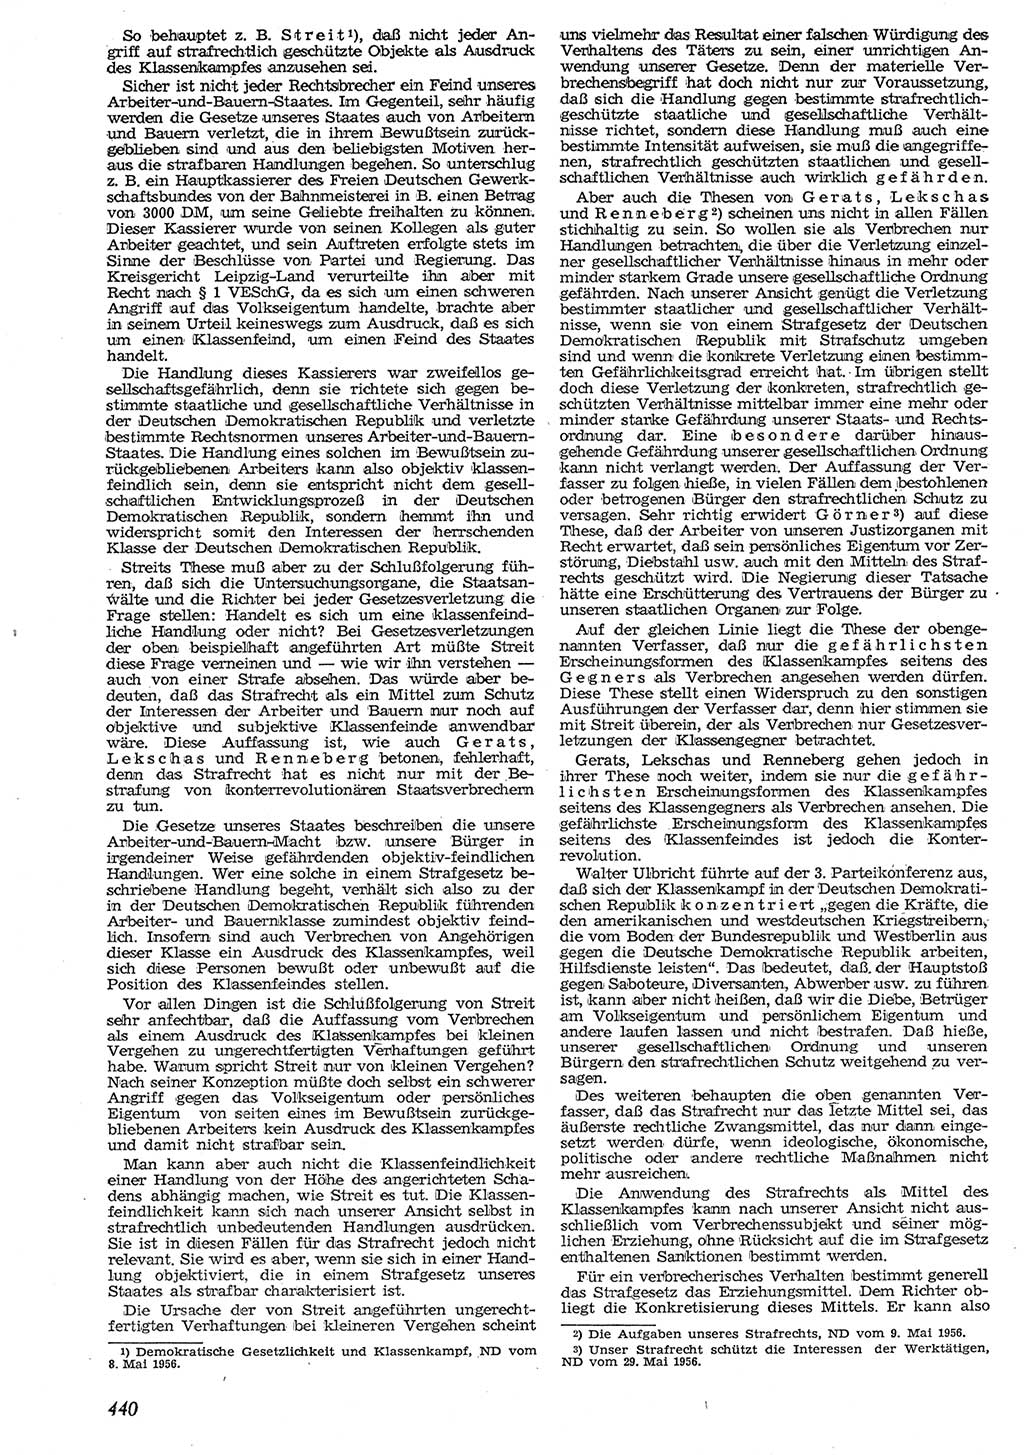 Neue Justiz (NJ), Zeitschrift für Recht und Rechtswissenschaft [Deutsche Demokratische Republik (DDR)], 10. Jahrgang 1956, Seite 440 (NJ DDR 1956, S. 440)